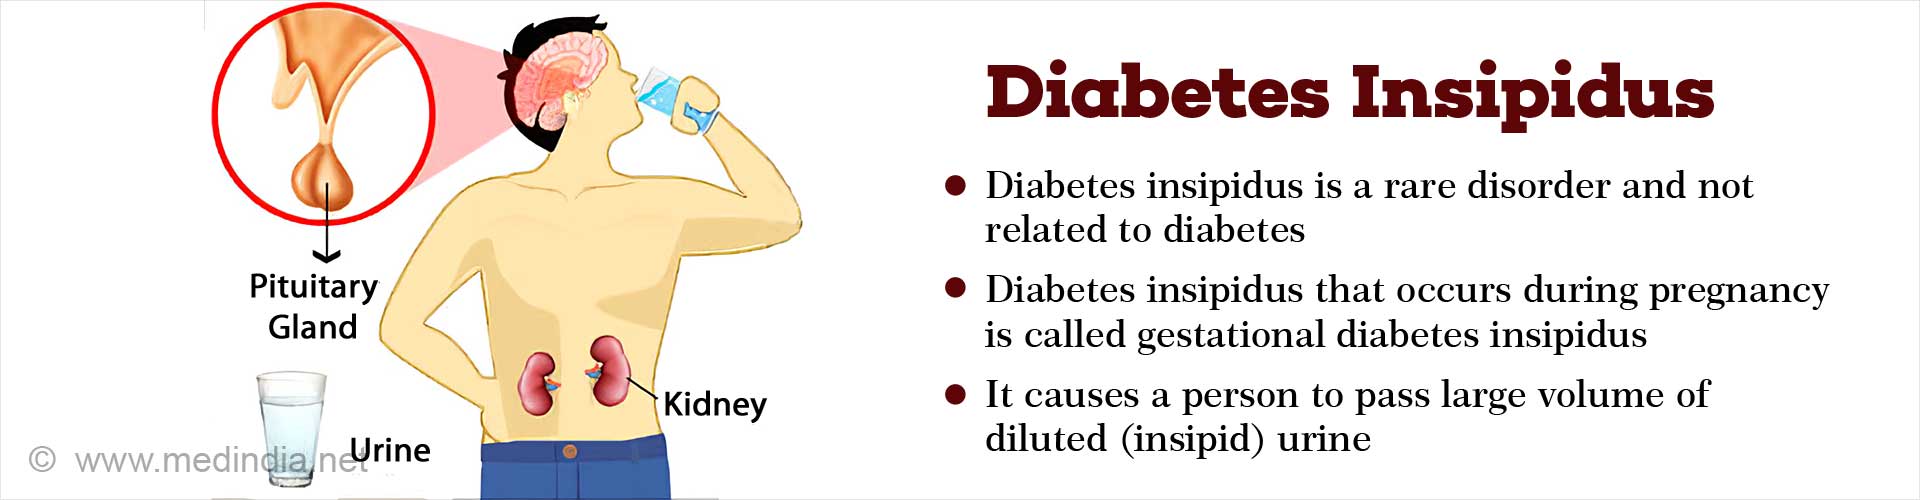 Diabetes Insipidus - Causes, Symptoms, Diagnosis, Treatment, Complications